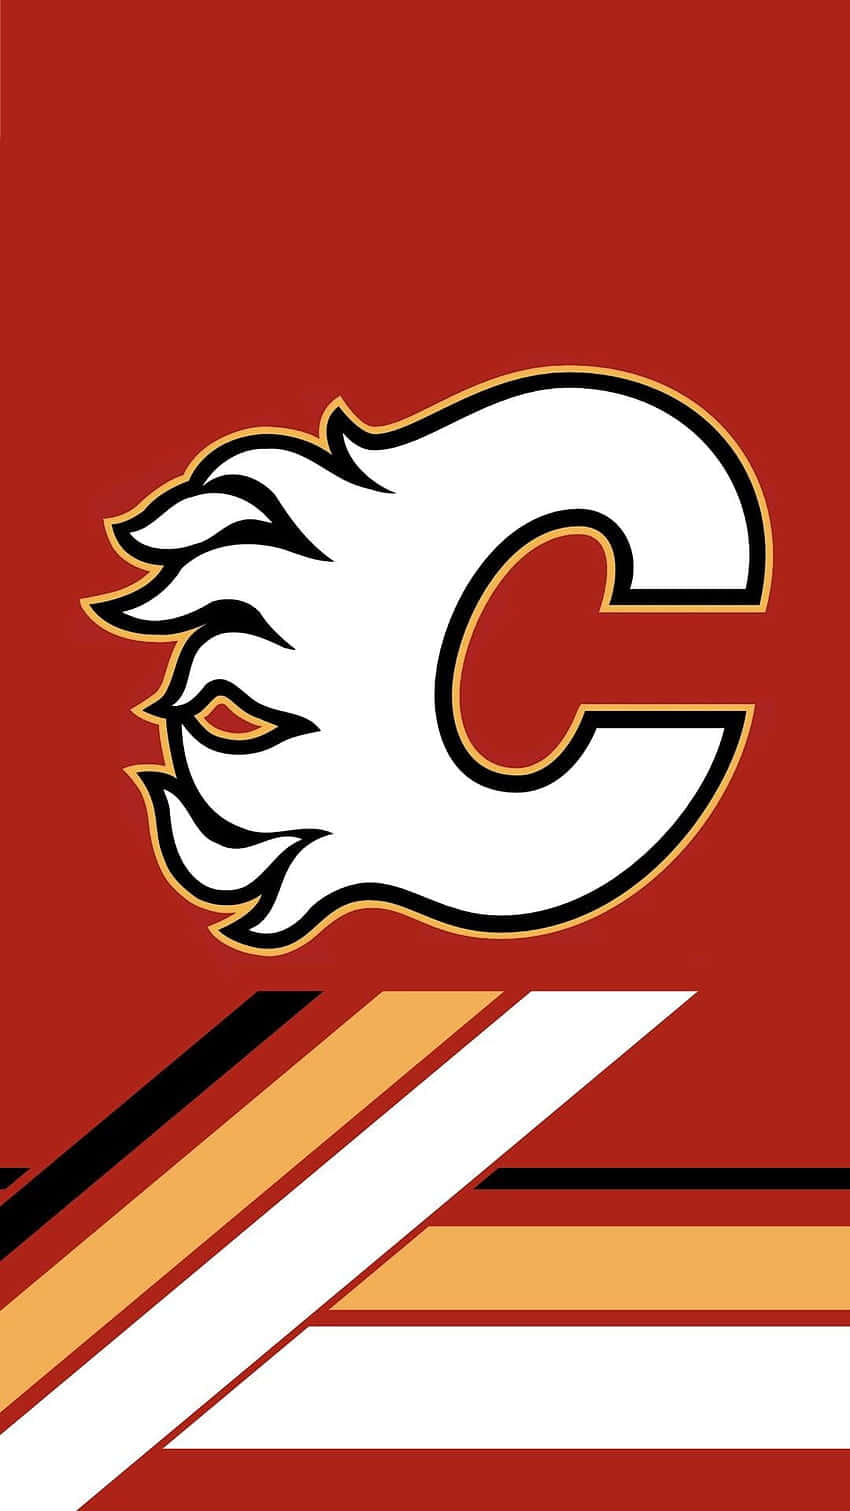 Calgary Flames— the pride of Alberta!